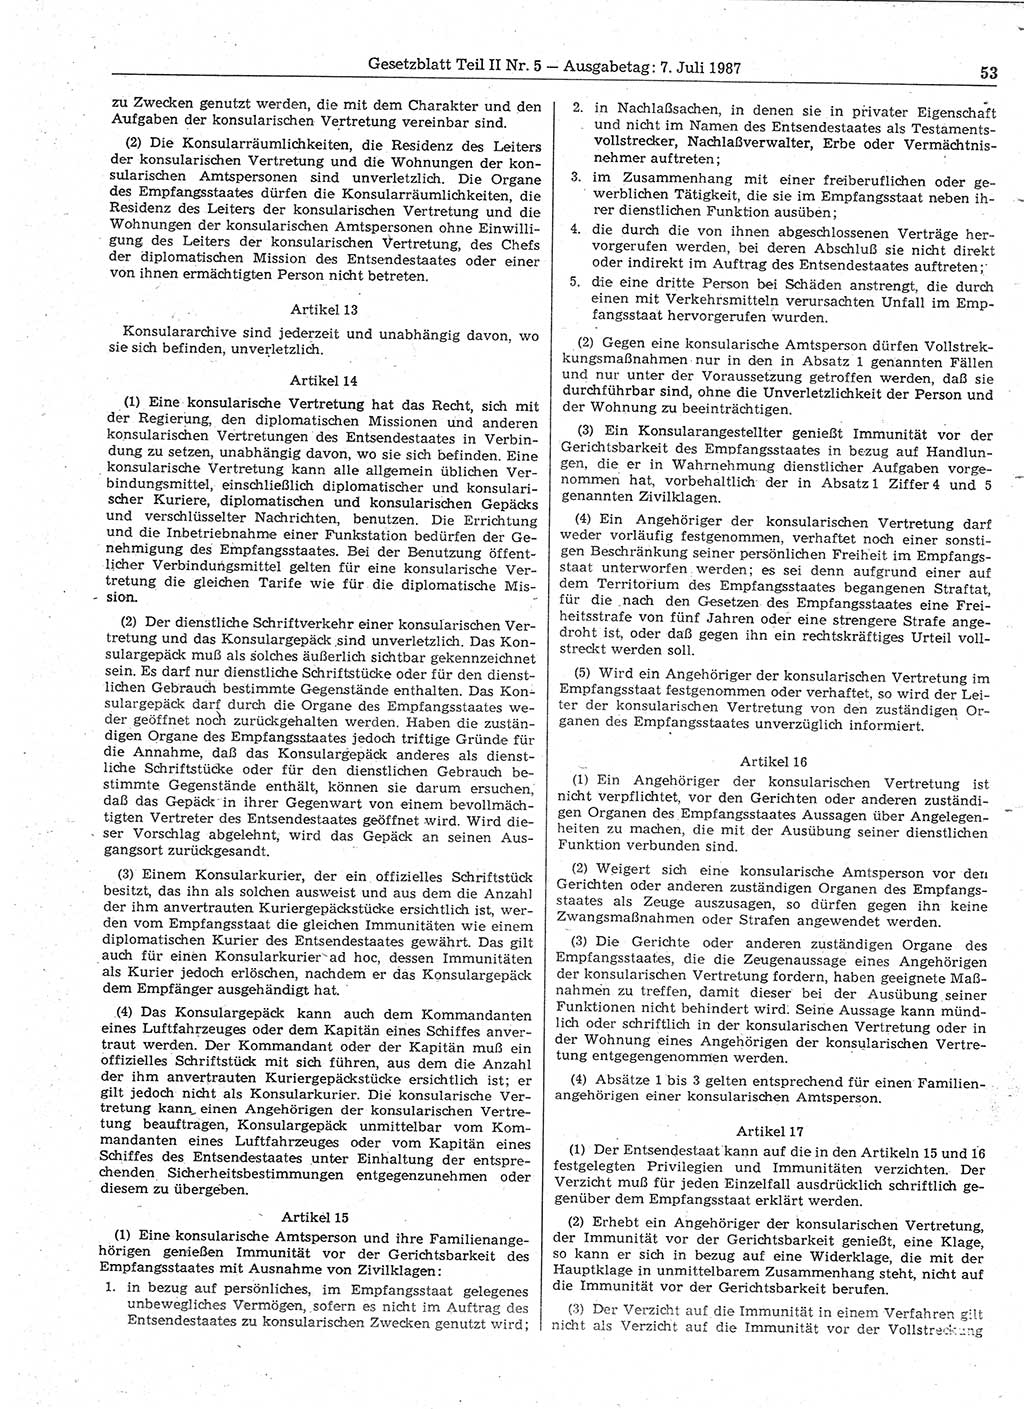 Gesetzblatt (GBl.) der Deutschen Demokratischen Republik (DDR) Teil ⅠⅠ 1987, Seite 53 (GBl. DDR ⅠⅠ 1987, S. 53)